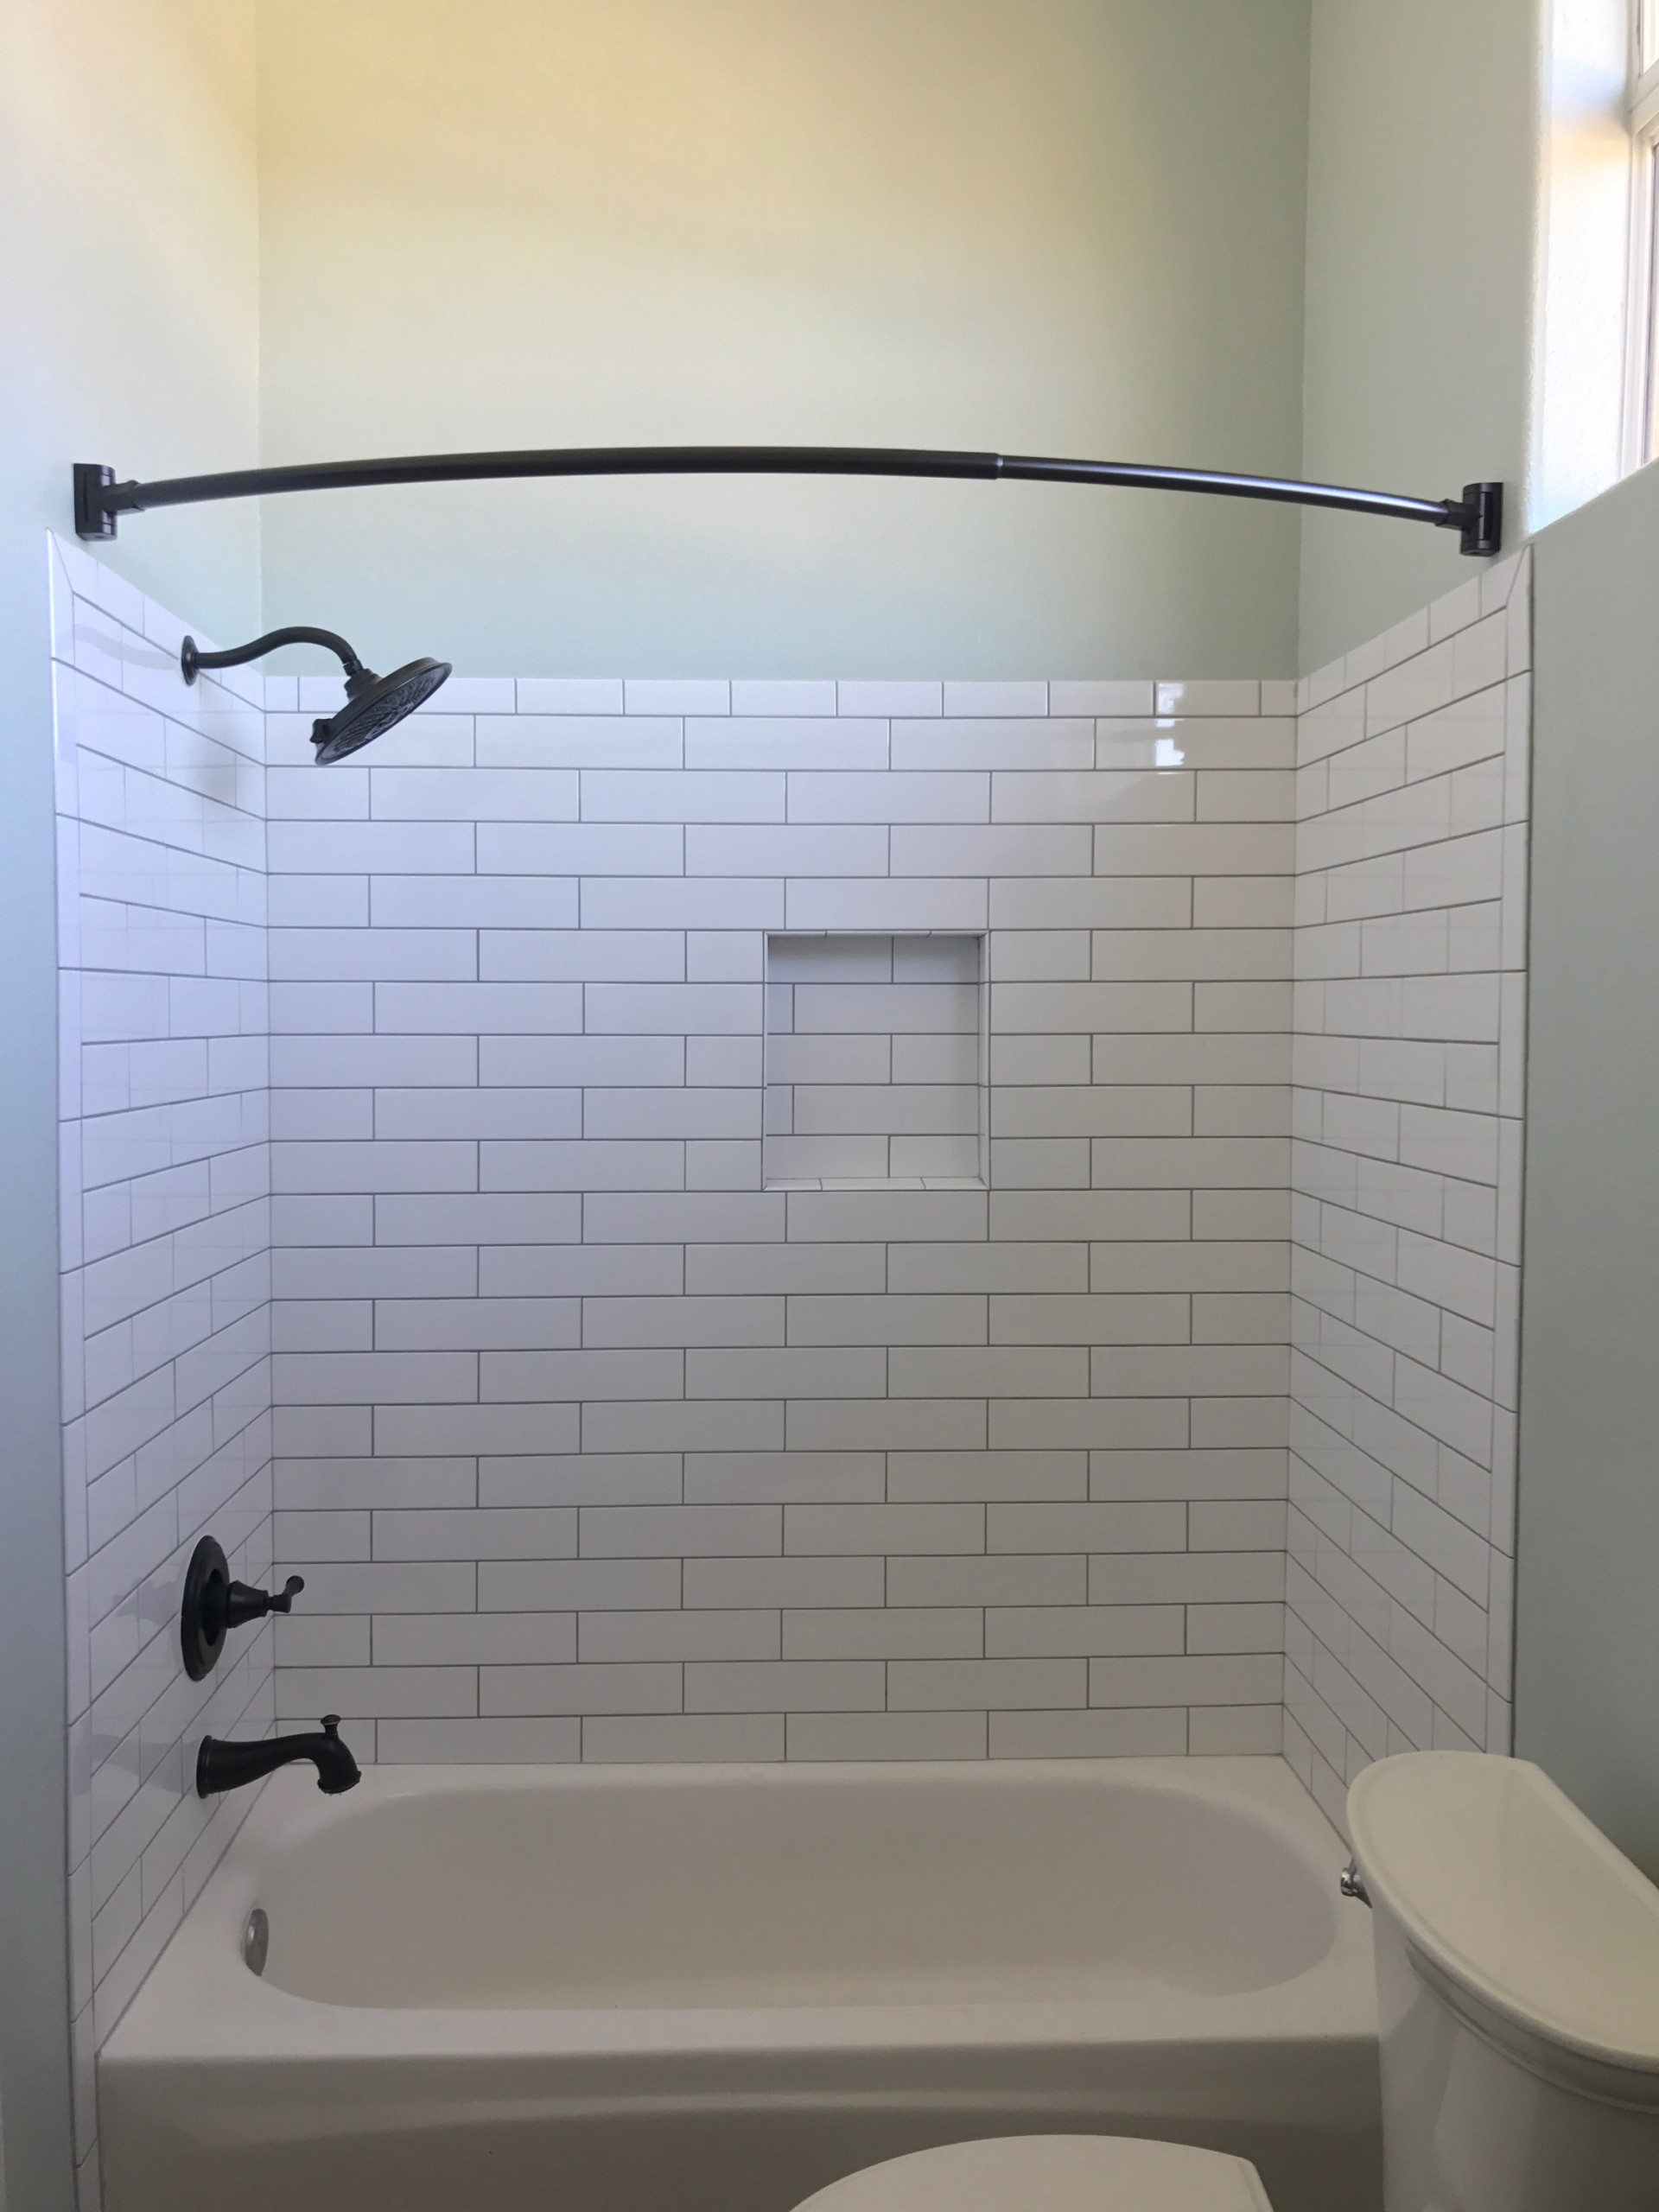 Oceanside - Bathroom Remodel